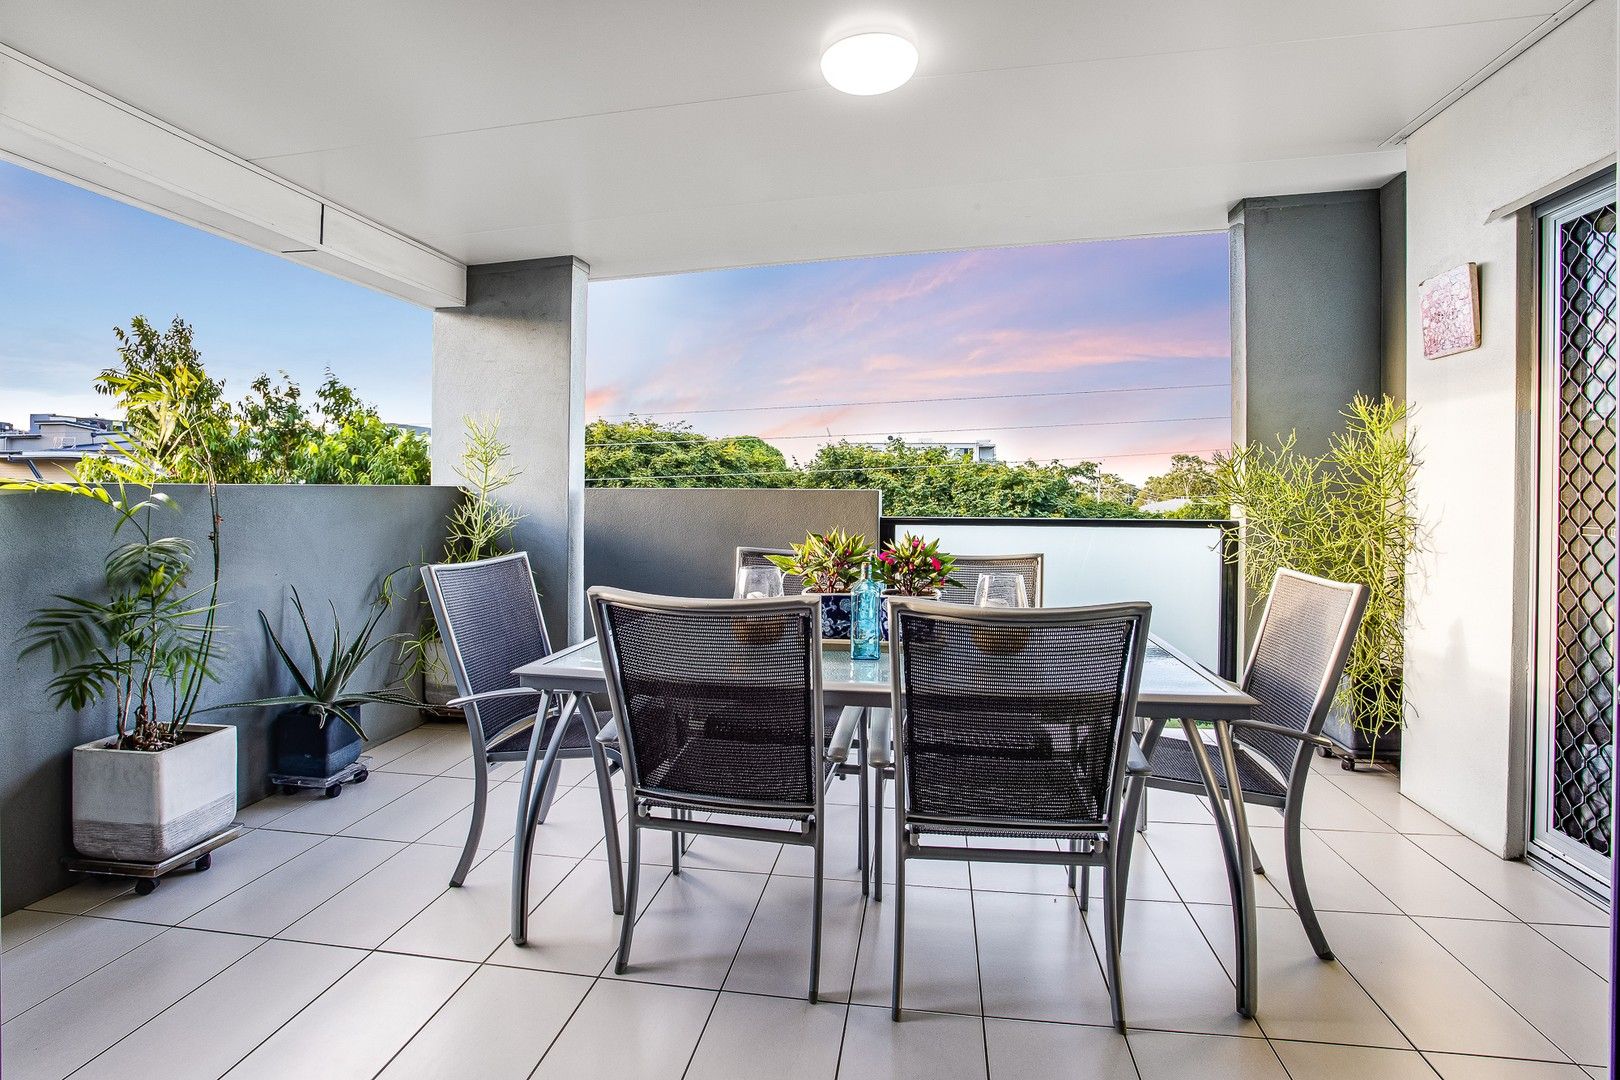 3 bedrooms Apartment / Unit / Flat in 5/56 Buckland Road NUNDAH QLD, 4012